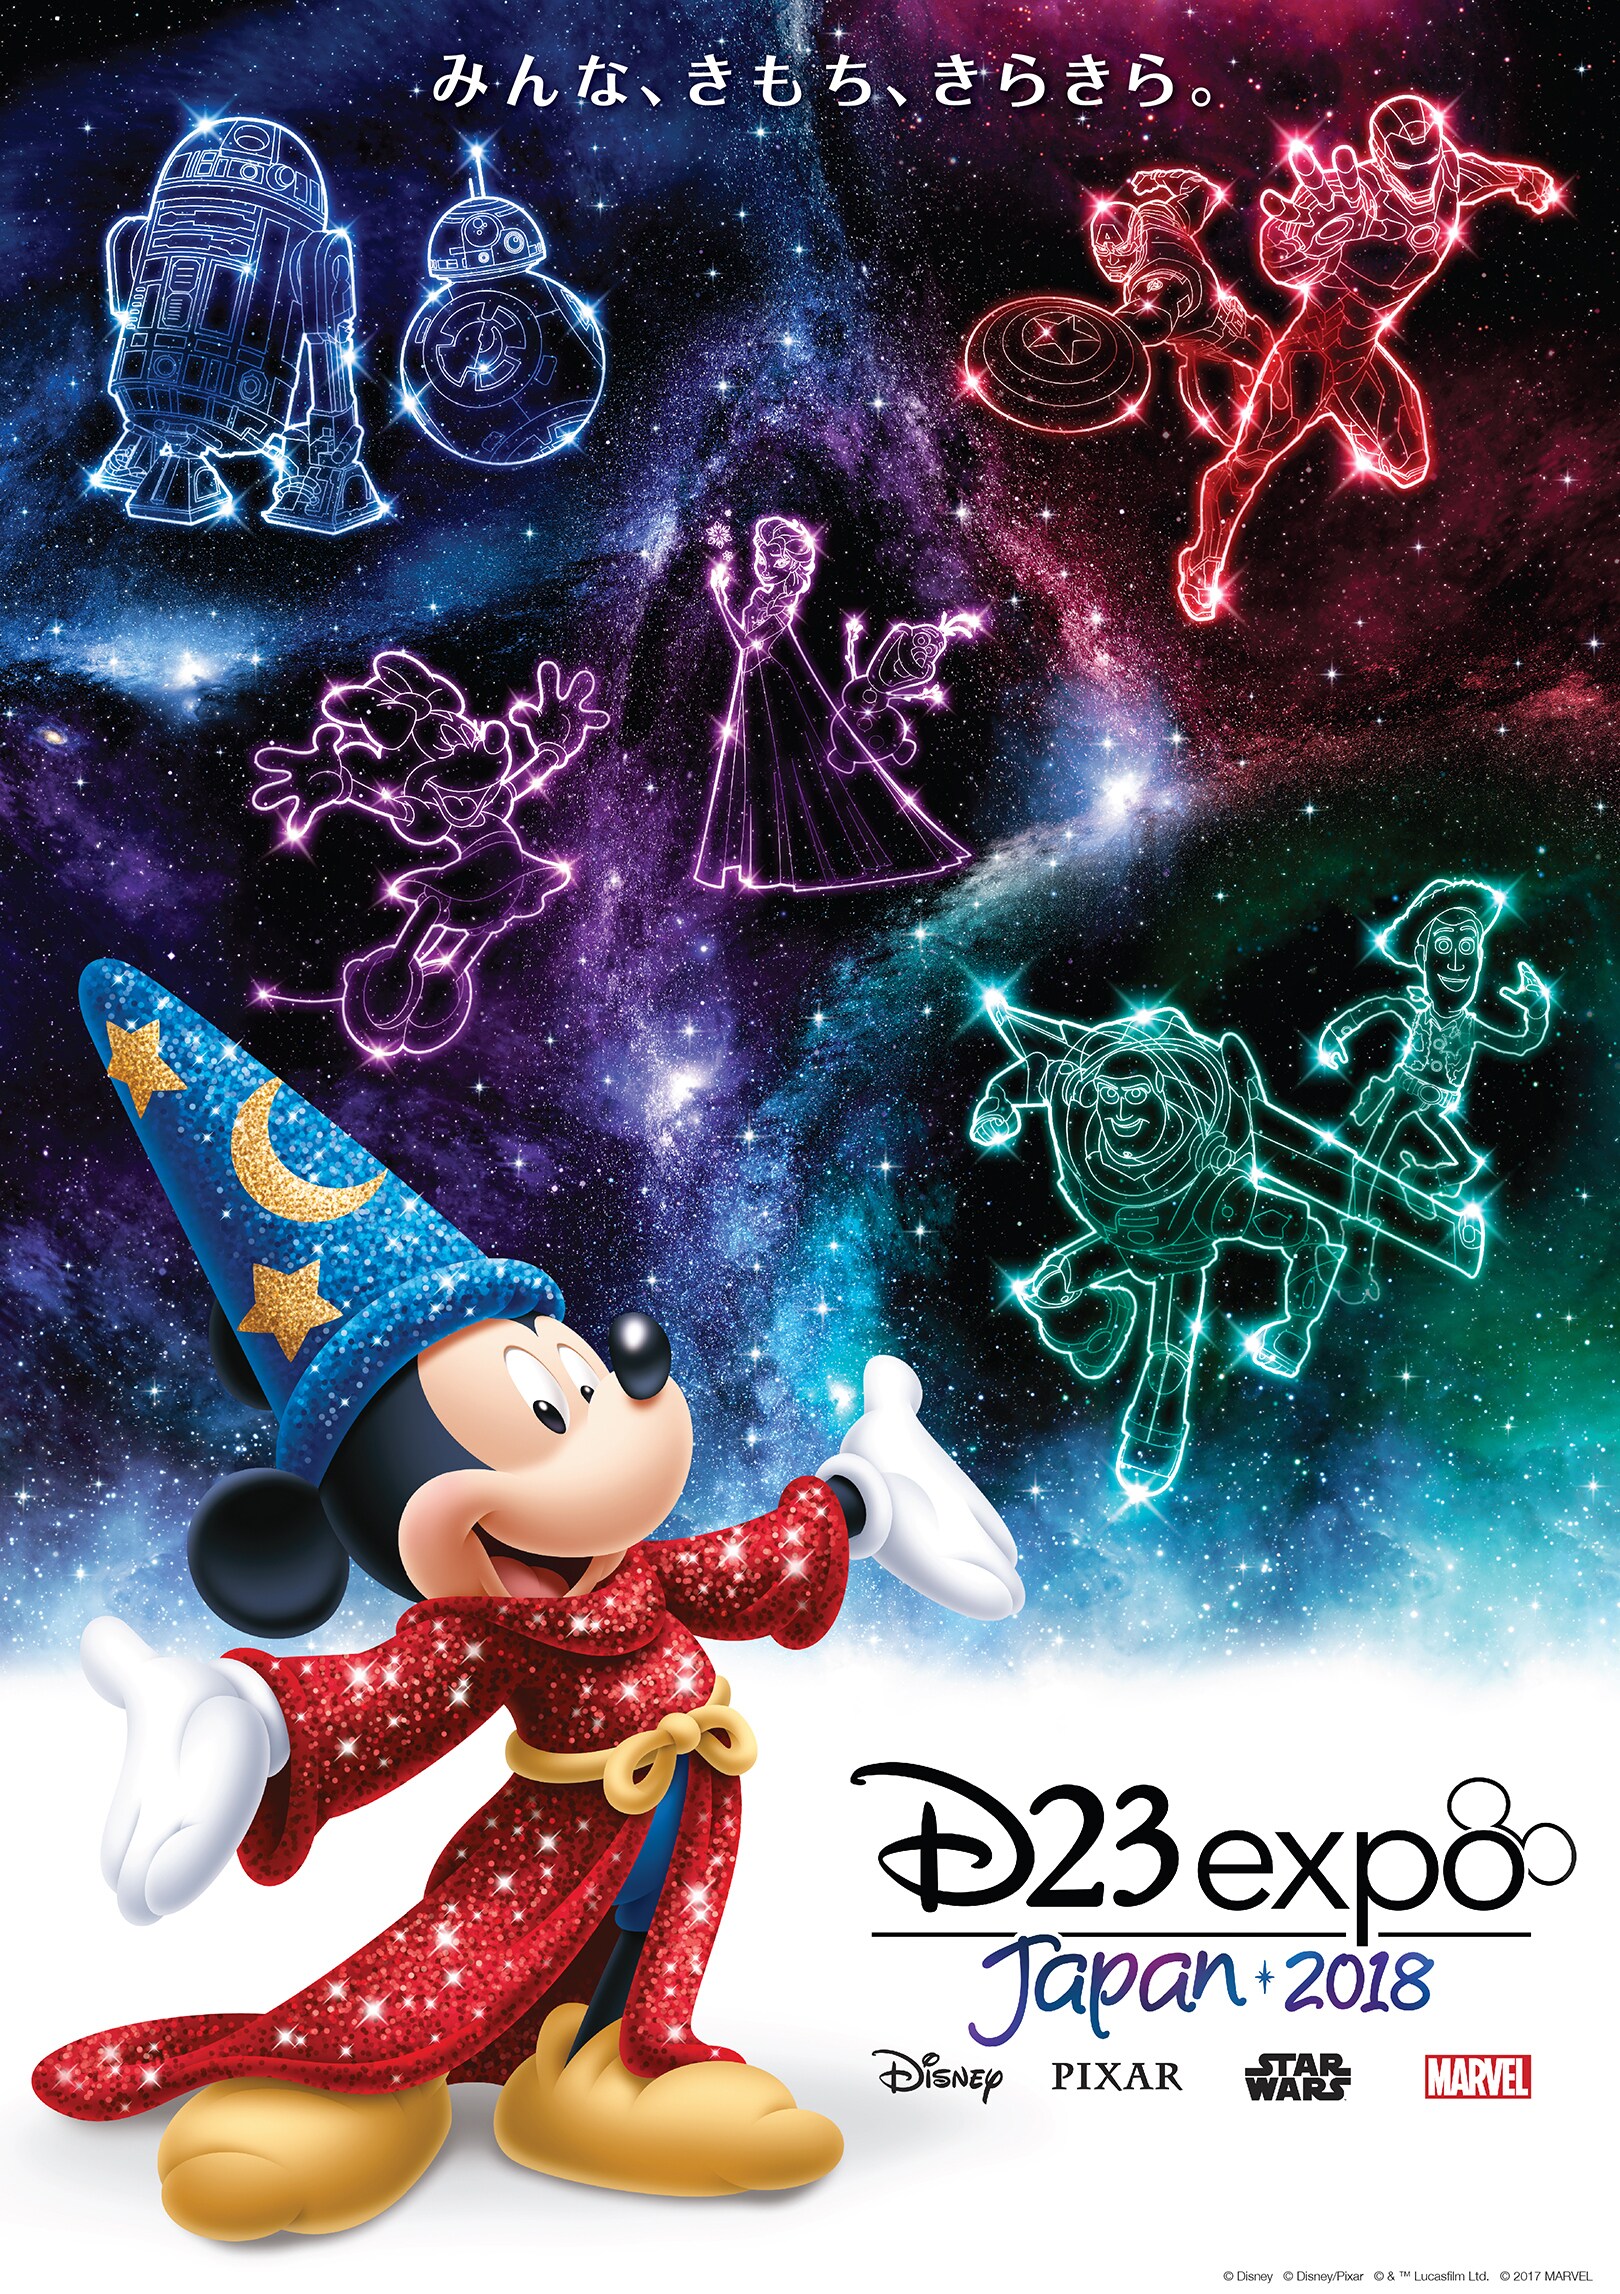 究極のディズニーファンイベント「D23 Expo Japan 2018」の テーマ 